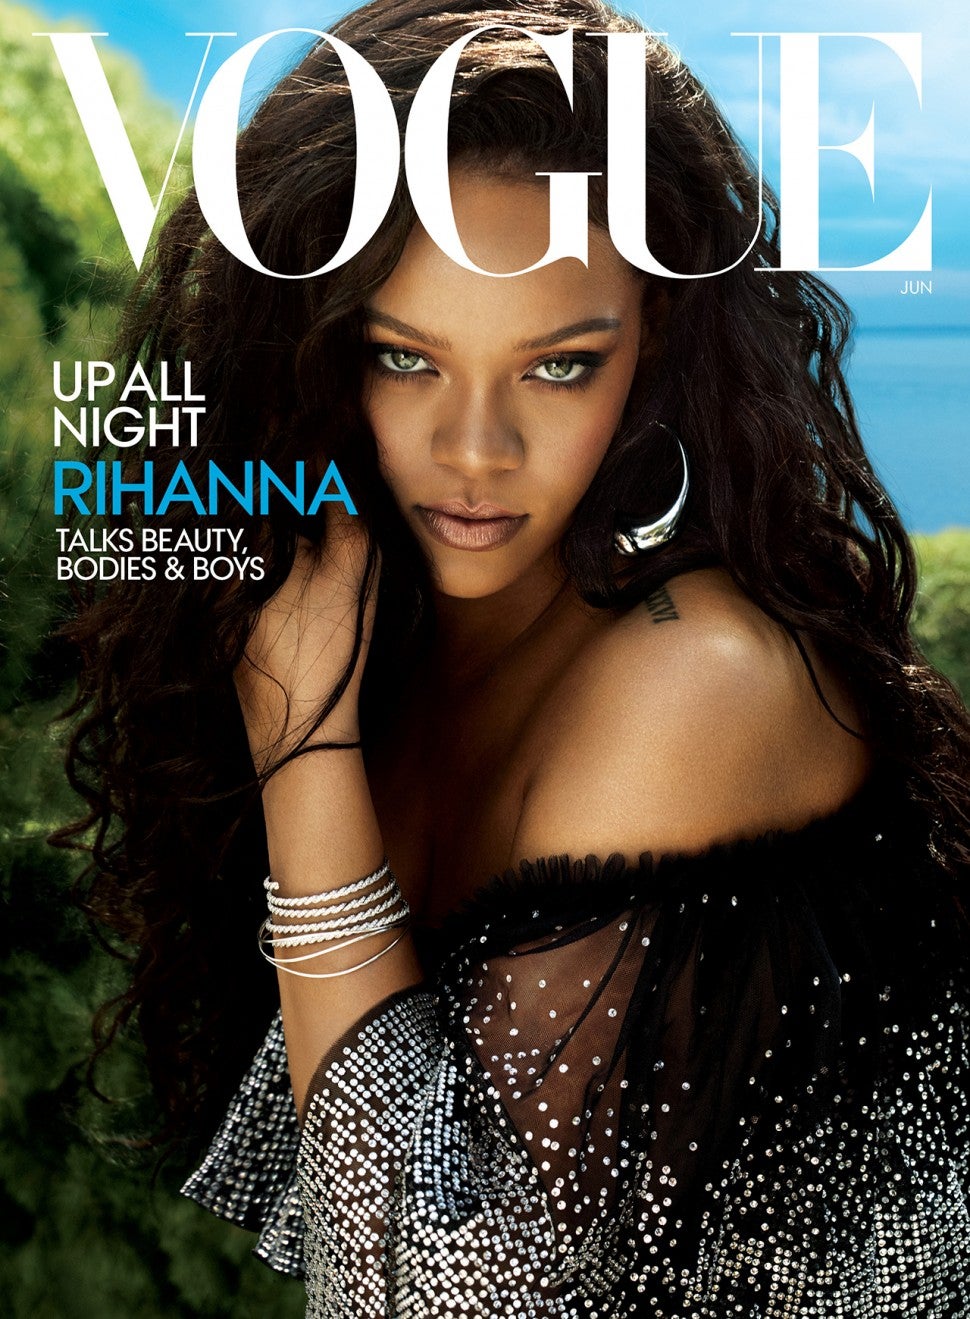 Rihanna's Vogue cover